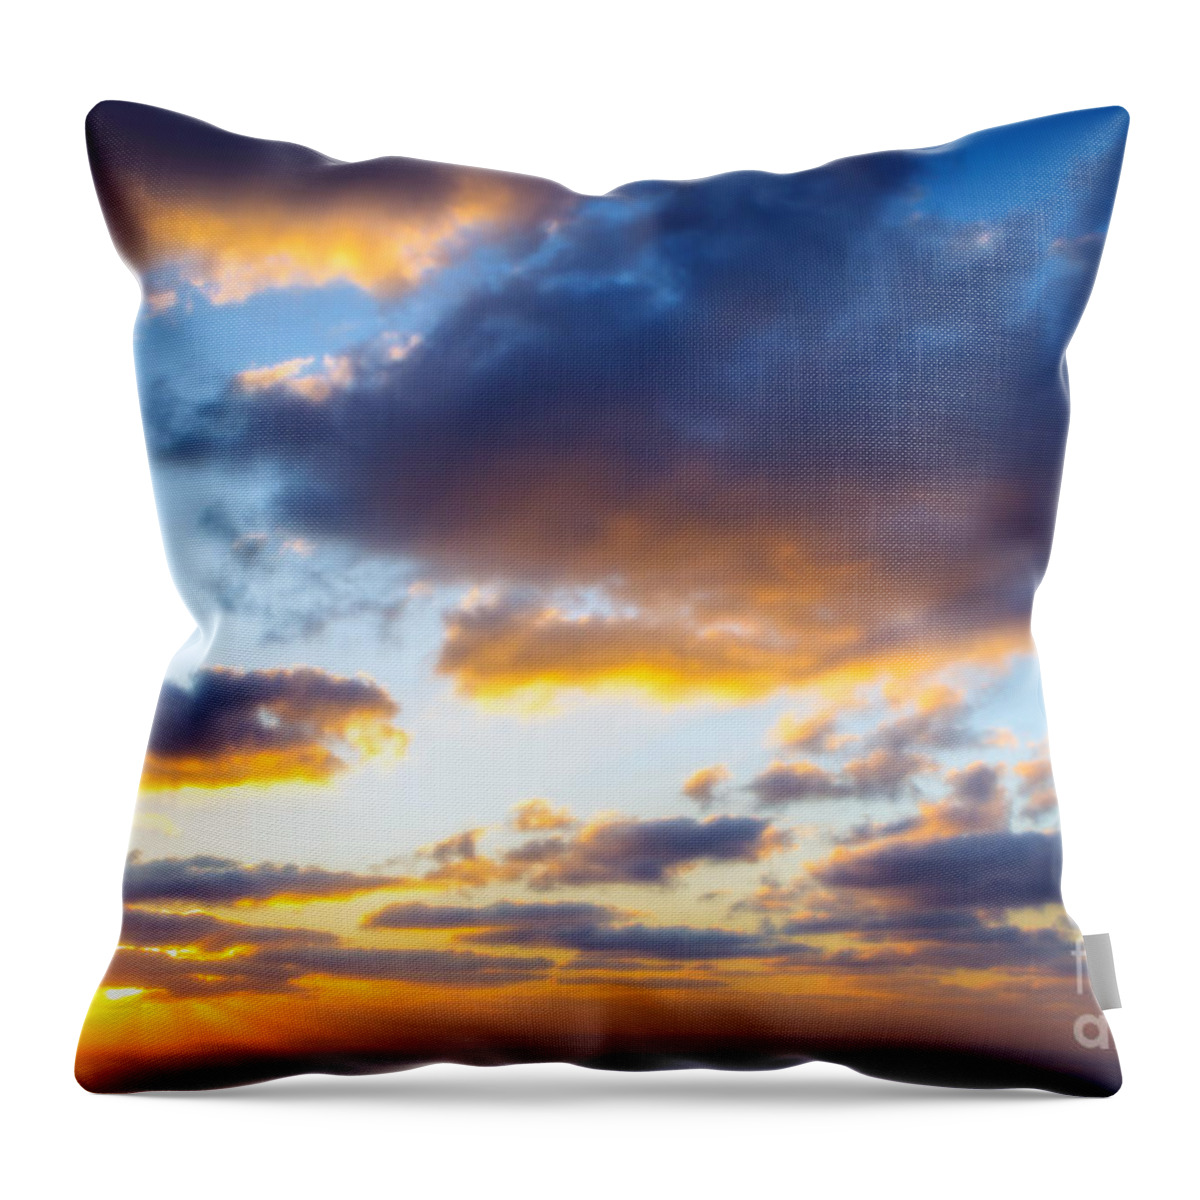 Nir Ben-yosef Xnir Sky And Cloud Israel Throw Pillow featuring the photograph Sky and cloud #3 by Nir Ben-Yosef